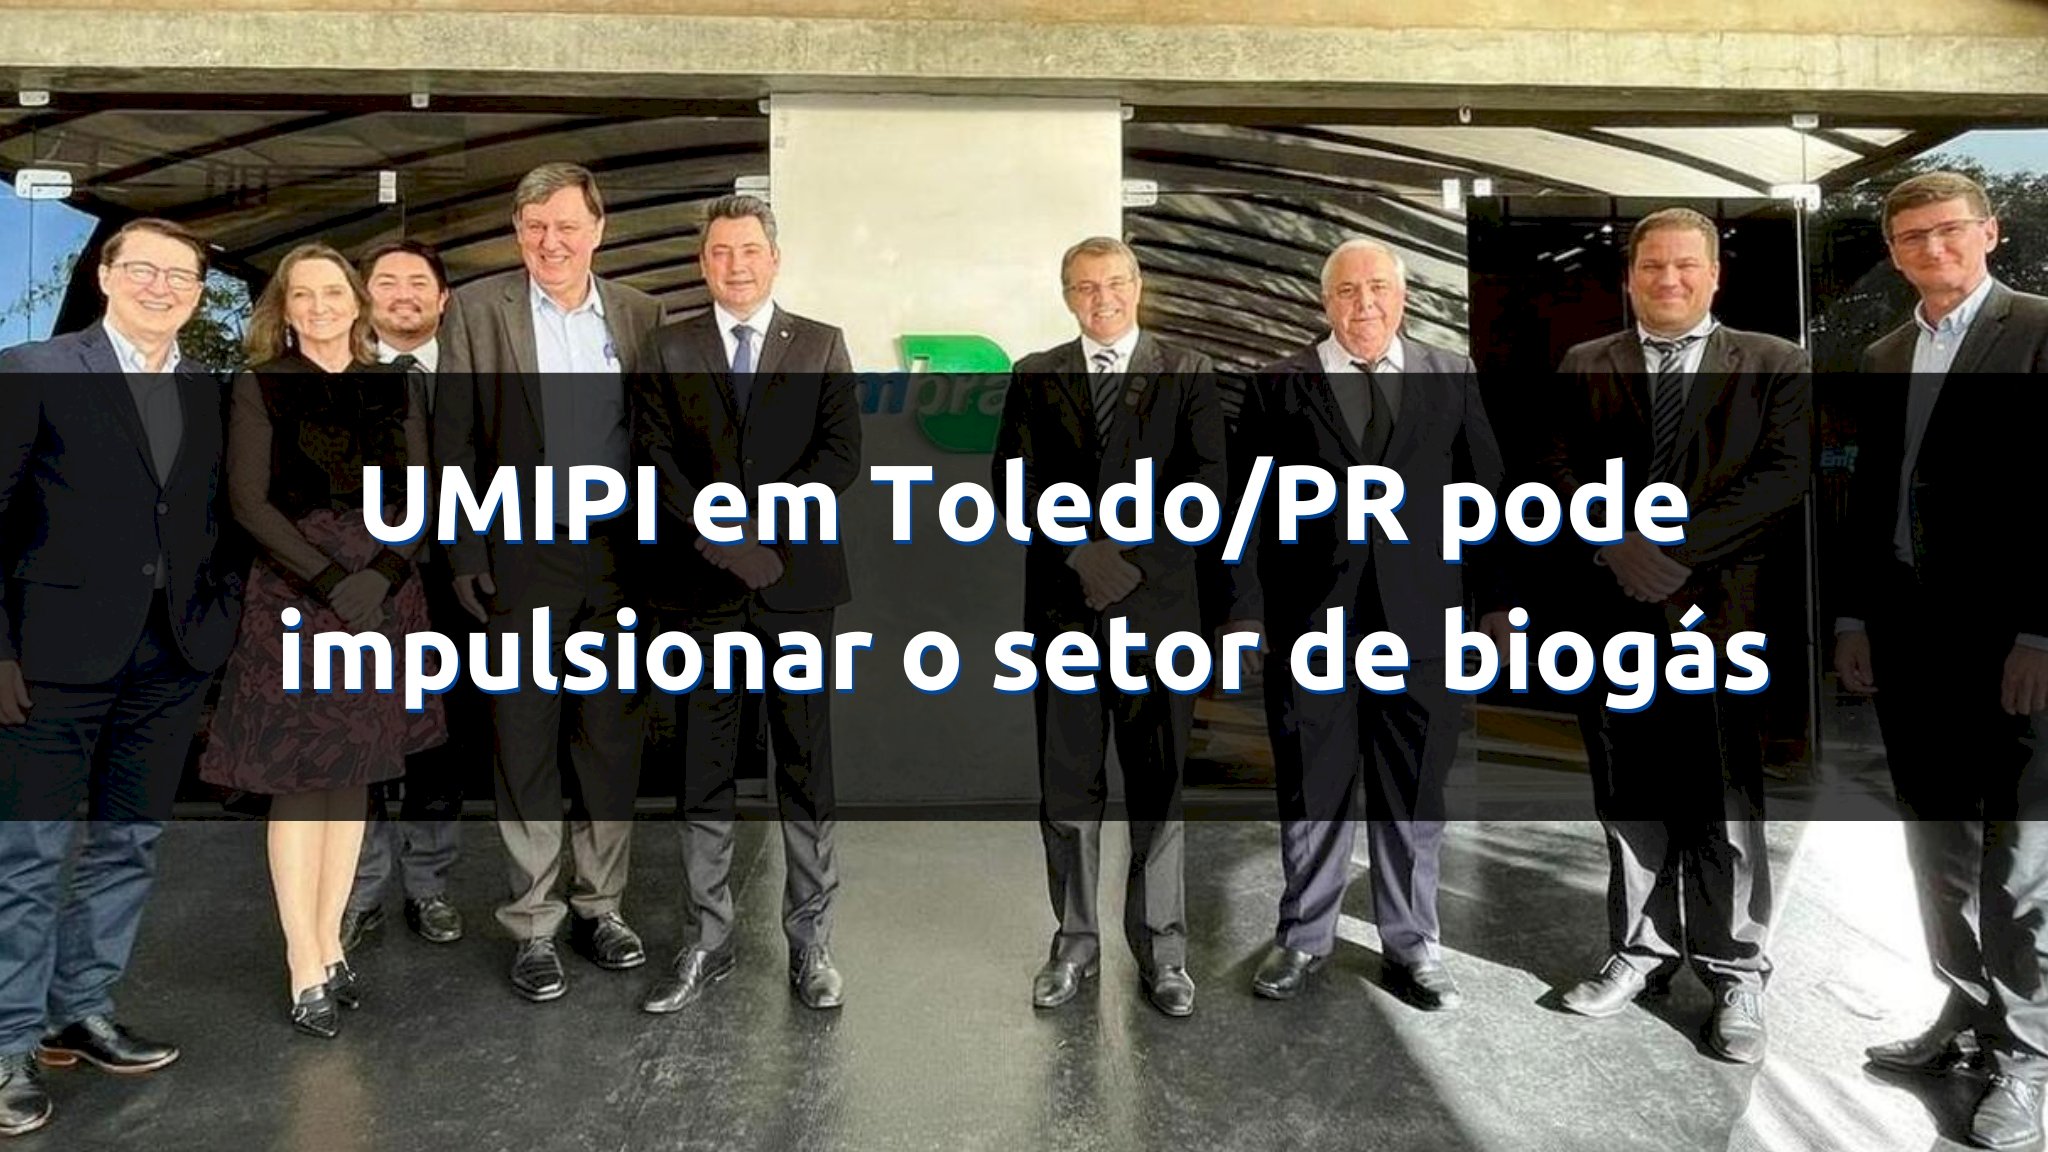 UMIPI em Toledo/PR pode impulsionar desenvolvimento do setor de biogás na região e no país